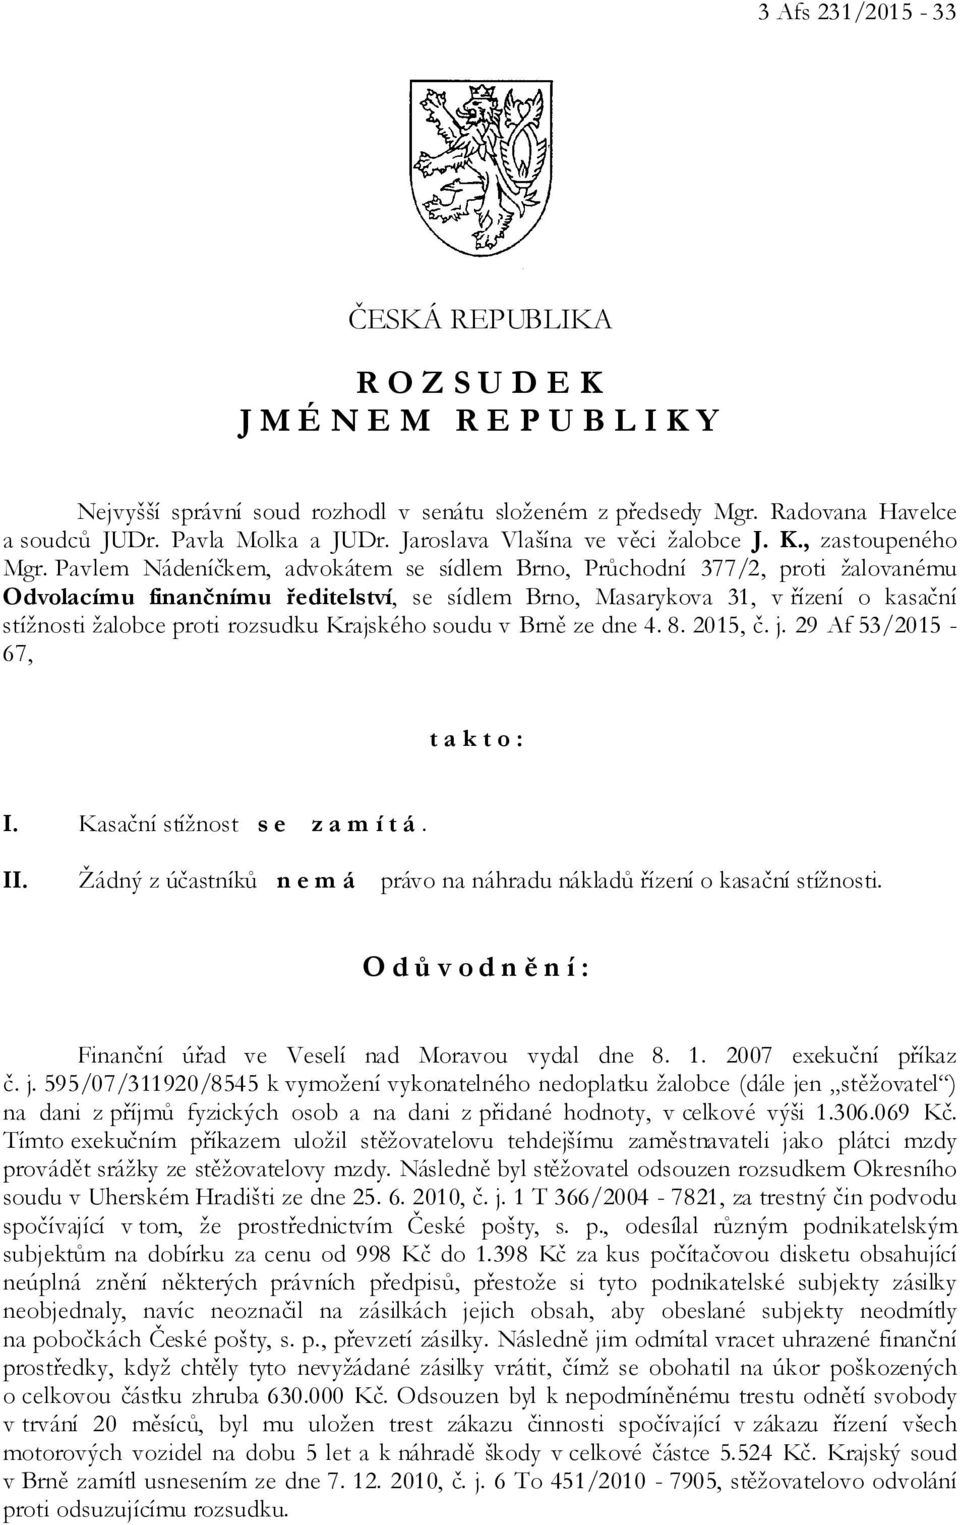 Pavlem Nádeníčkem, advokátem se sídlem Brno, Průchodní 377/2, proti žalovanému Odvolacímu finančnímu ředitelství, se sídlem Brno, Masarykova 31, v řízení o kasační stížnosti žalobce proti rozsudku